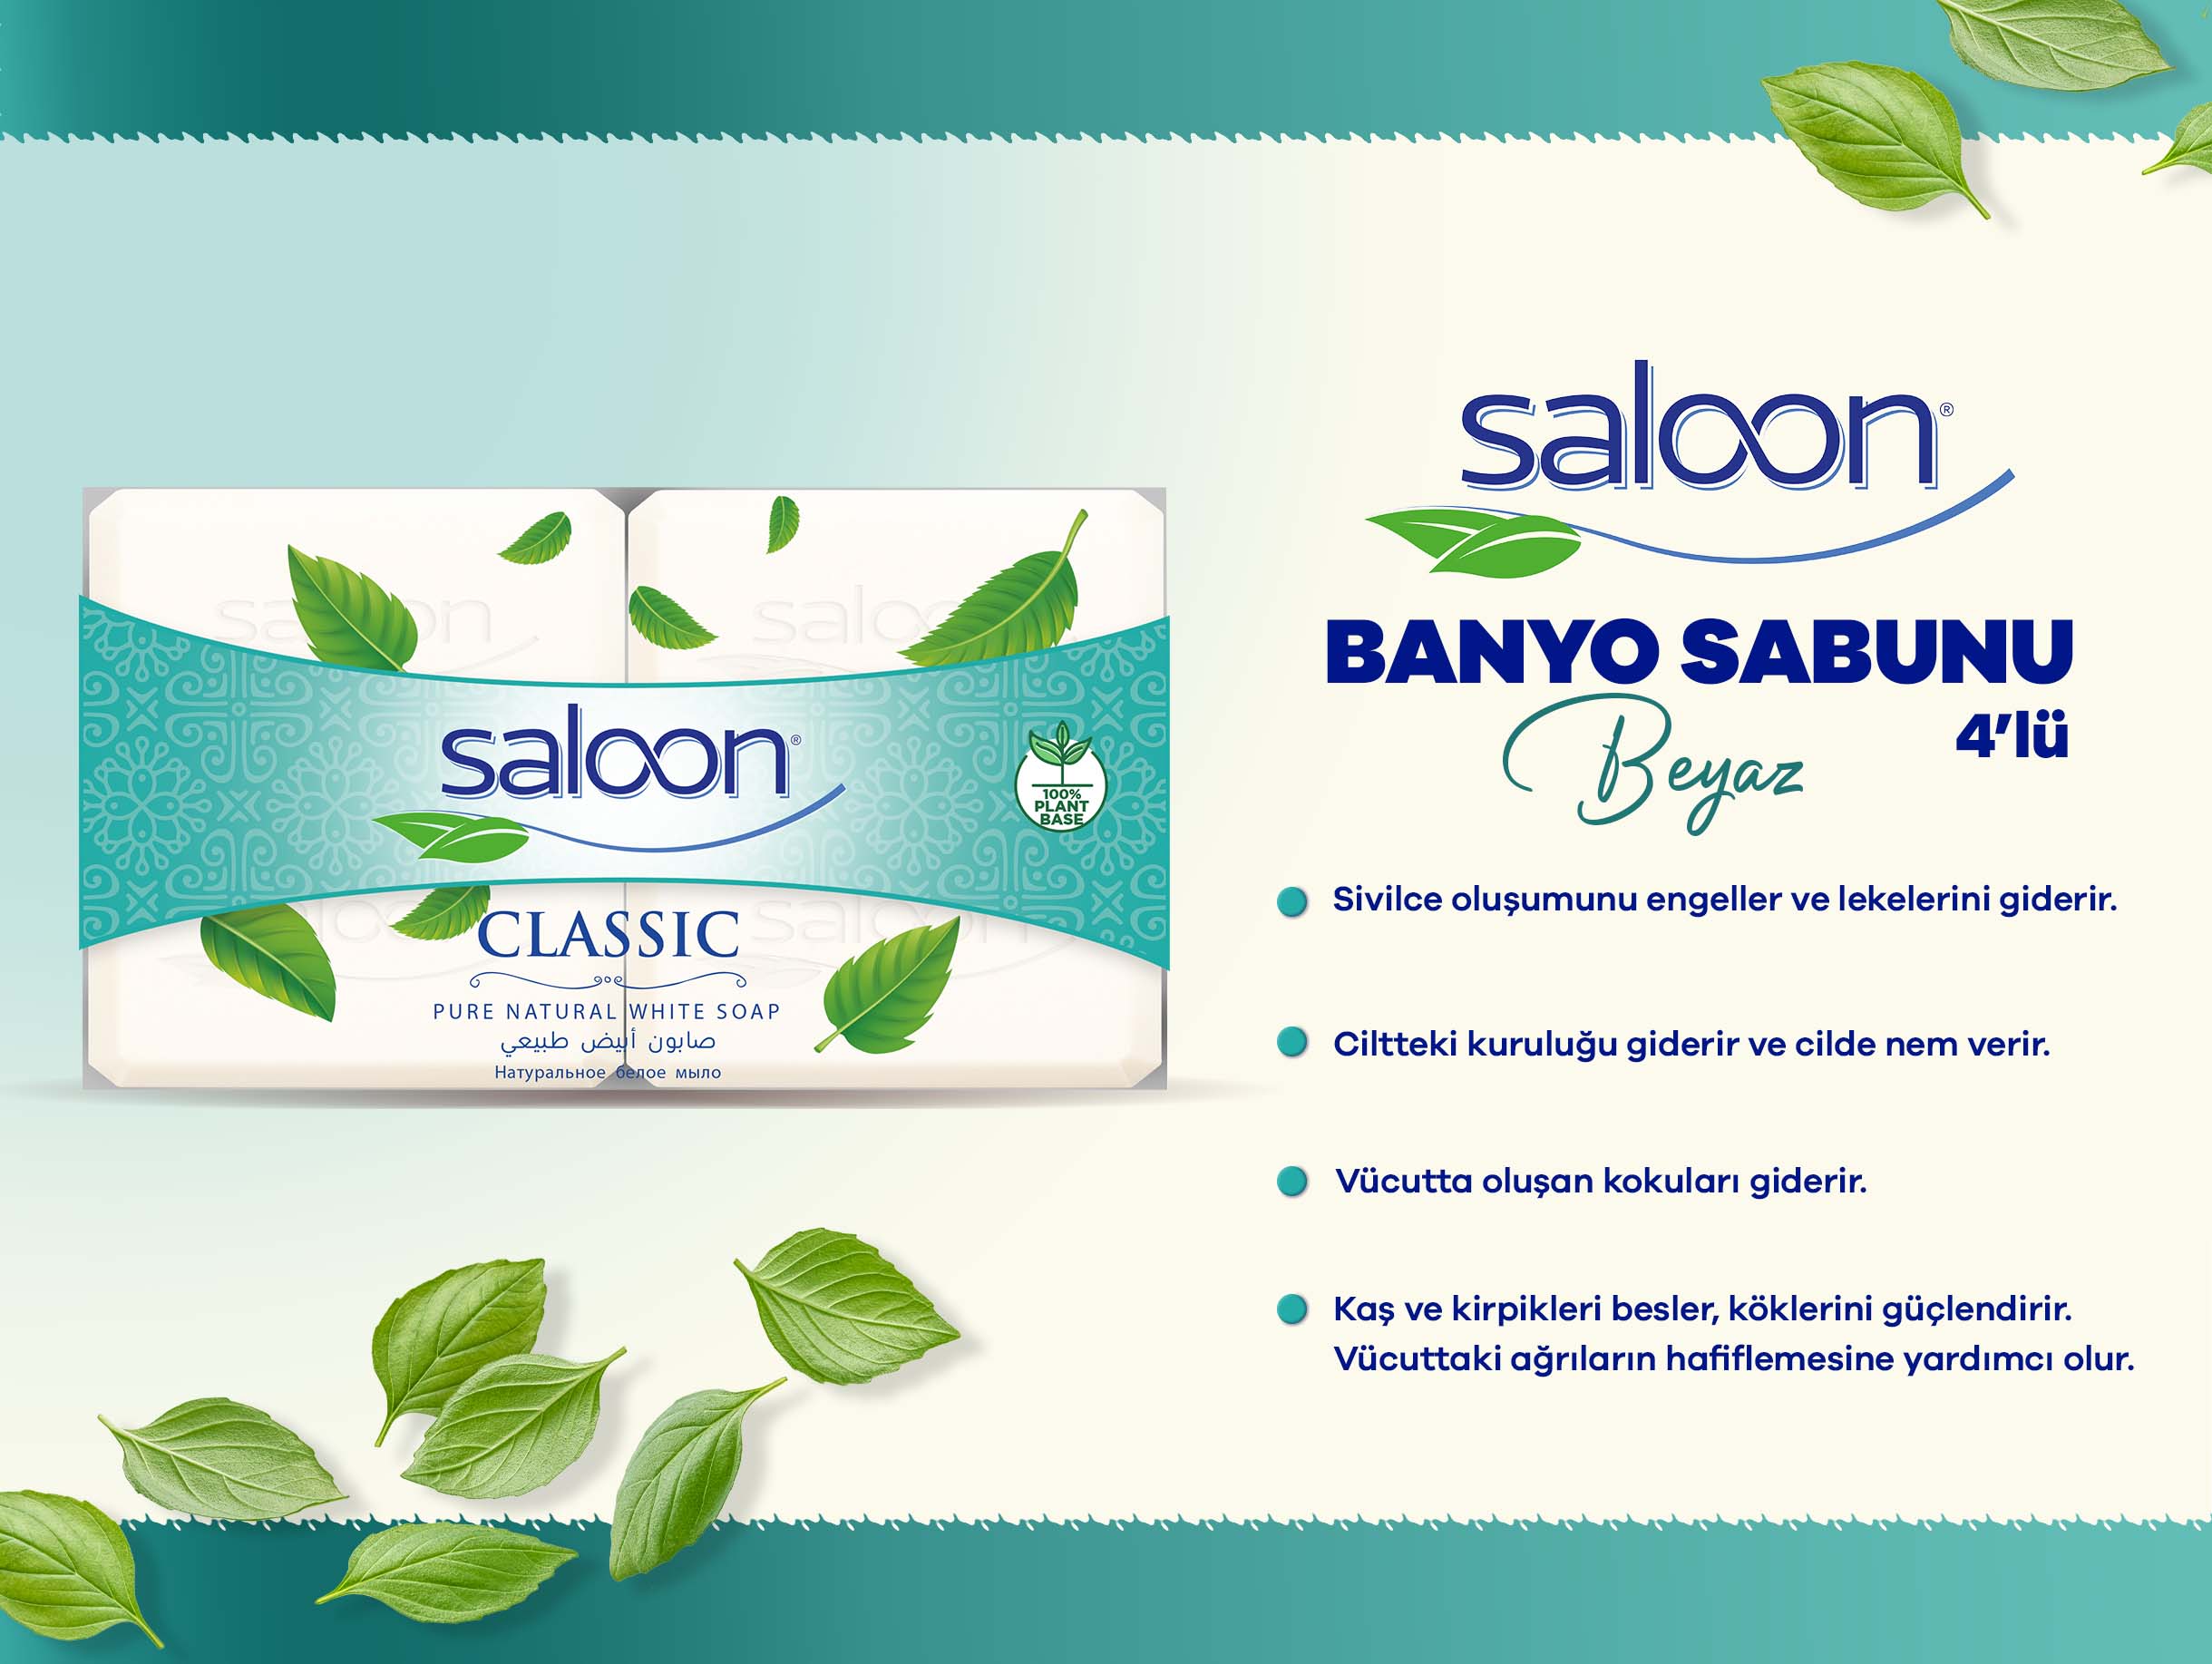 Saloon Banyo Sabunu Beyaz 4lü_.jpg (235 KB)